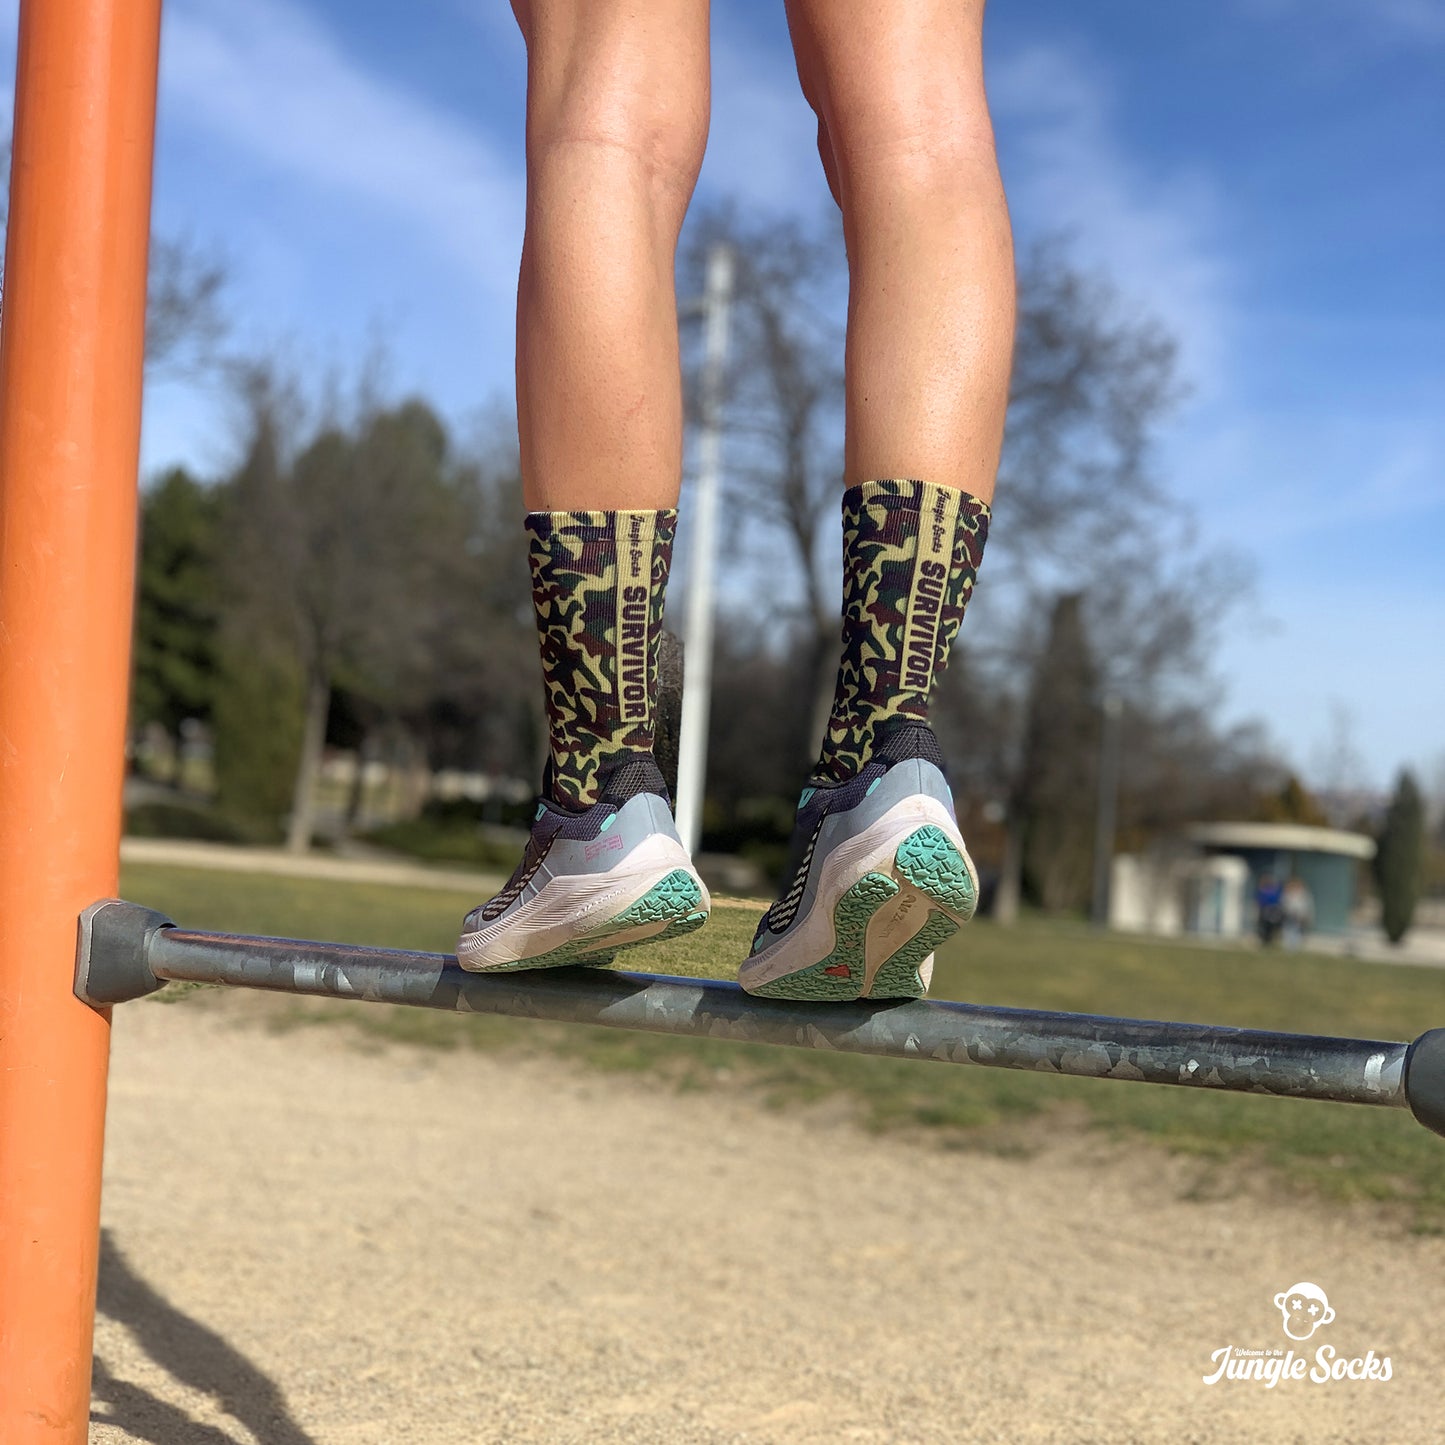 Chica entrenando en el parque con calcetines JungleSocks con diseño de camuflaje